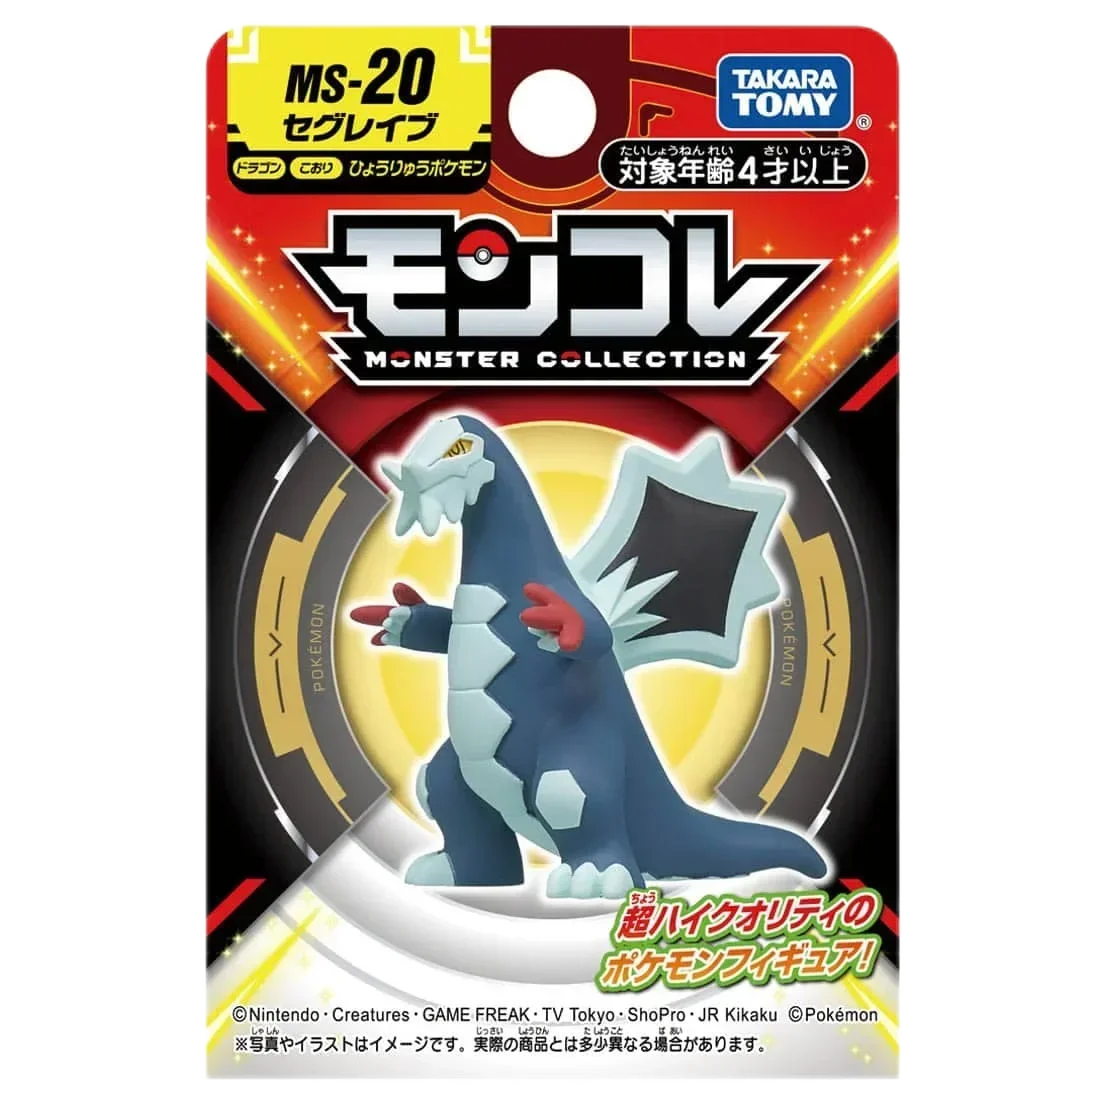 

Takara Tomy Nintendo Pokemon TOMICA Pocket Monster Pokemon Hand model Doll MS-20 Baxcalibur Figure Resin Anime Figure Kids